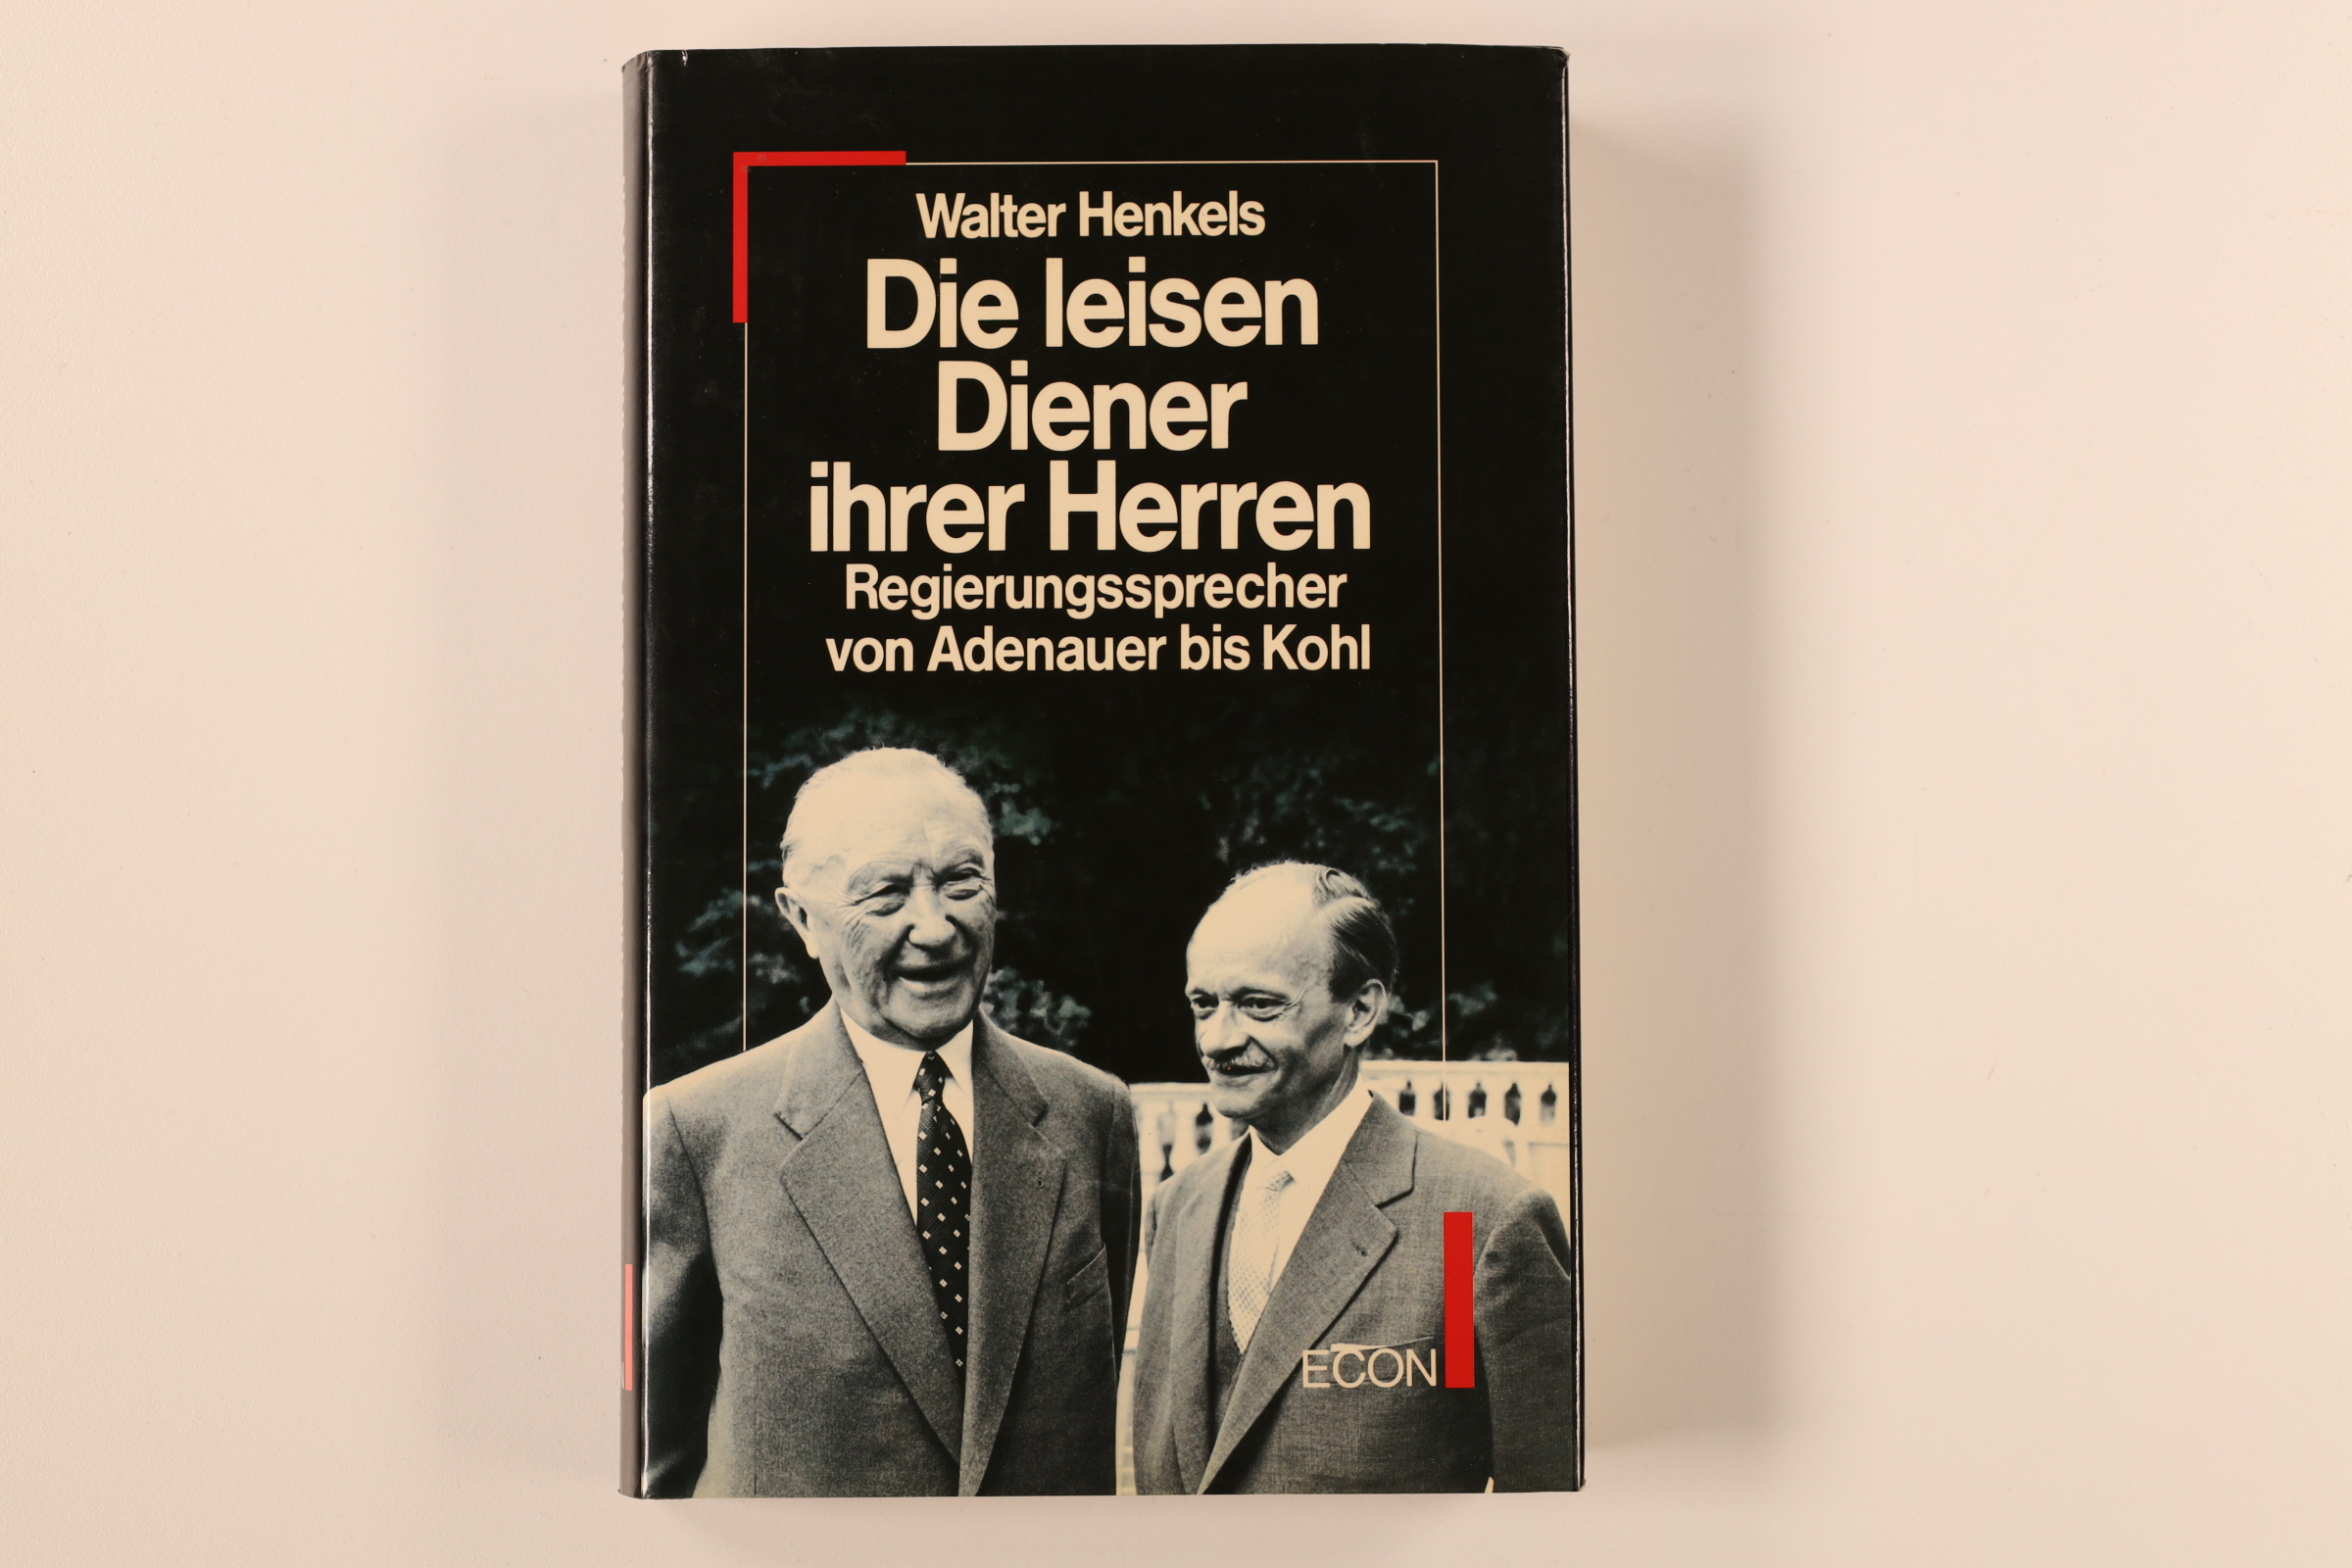 DIE LEISEN DIENER IHRER HERREN. Regierungssprecher von Adenauer bis Kohl - Henkels, Walter